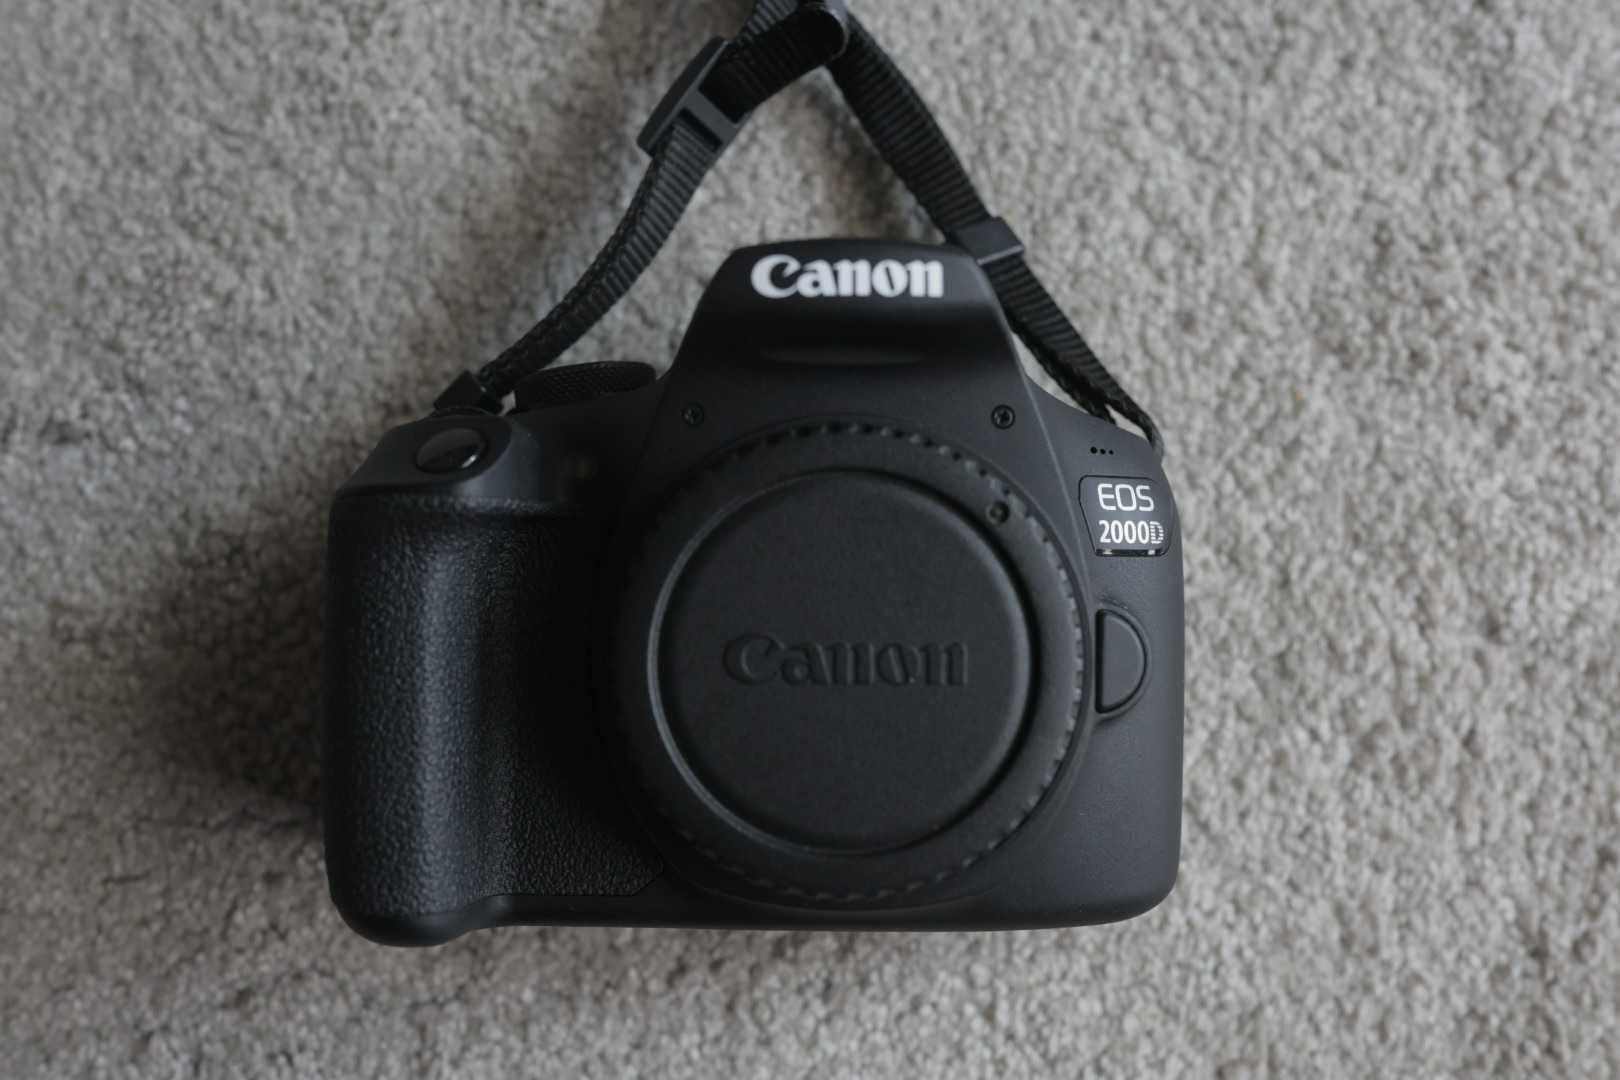 Canon Corpo Canon Eos 2000d - NOVA.